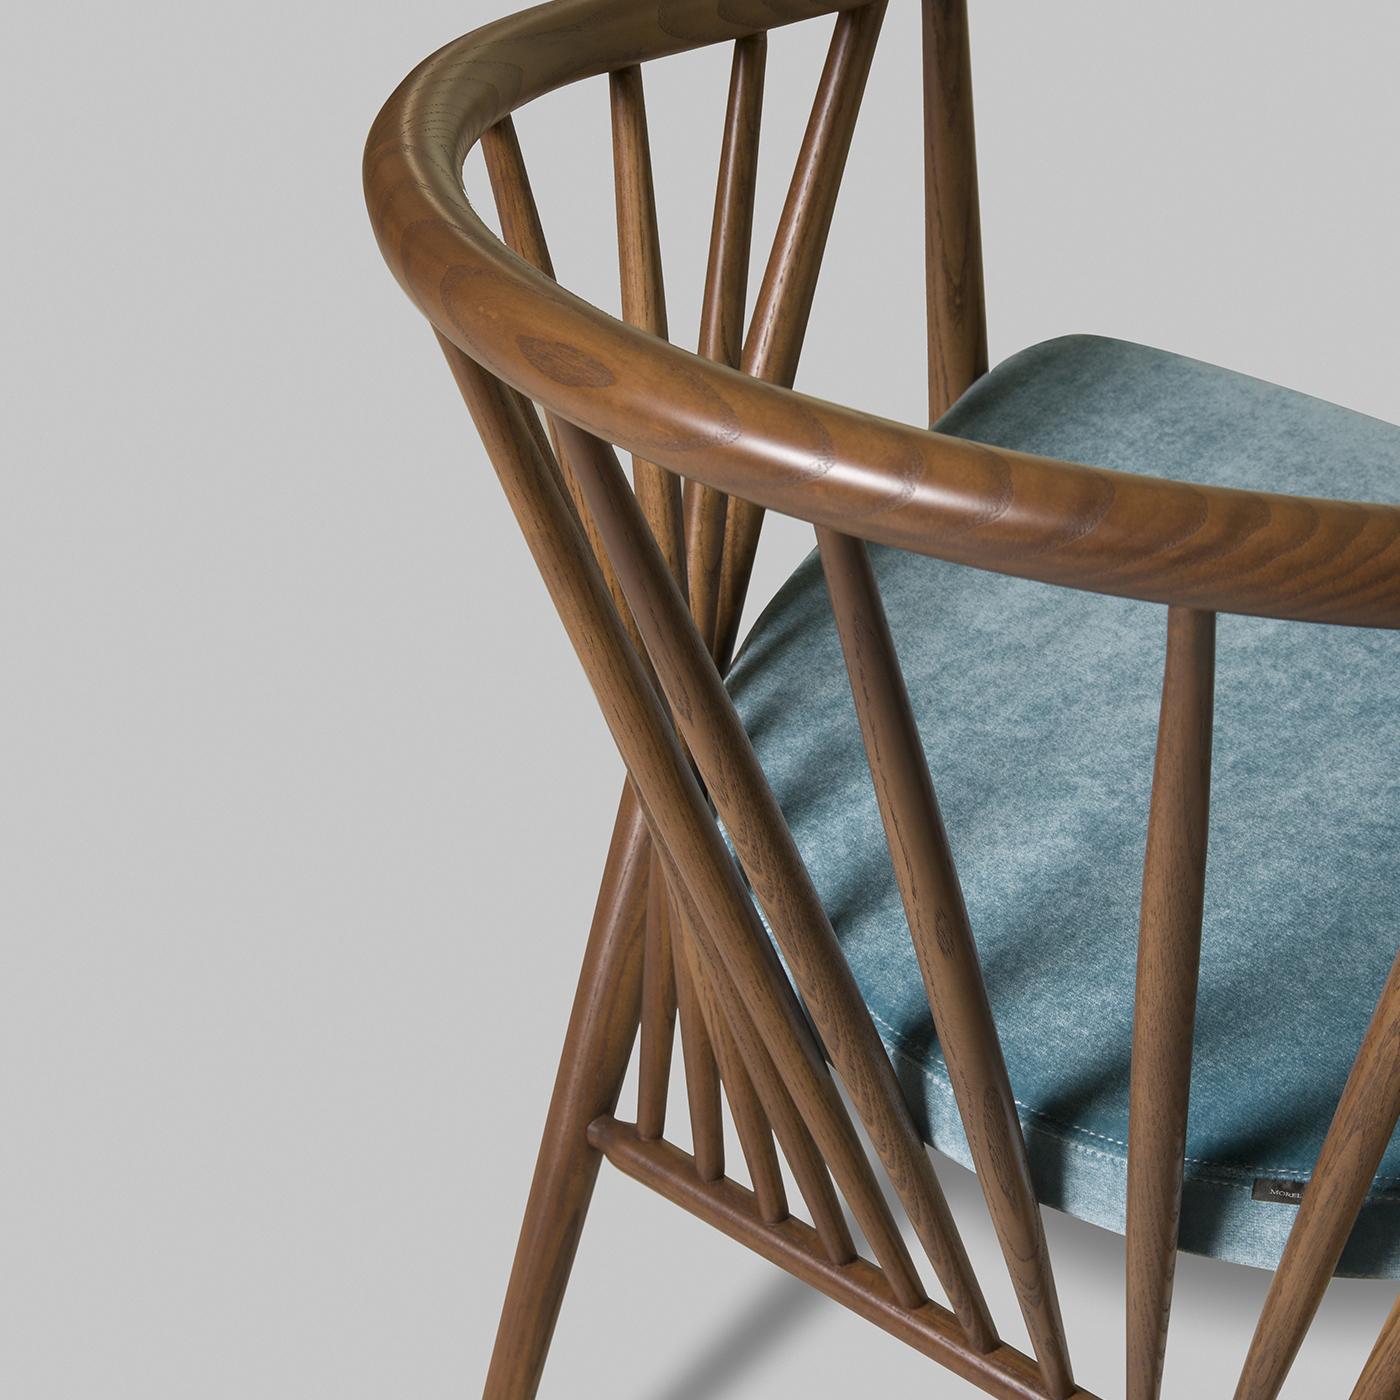 Jenny ist eine originelle Stuhlserie aus massivem Walnuss-Eschenholz mit einem gepolsterten Sitz aus blauem Samt. Dank der eleganten Anordnung der Stangen der gebogenen Rückenlehne ist die Struktur besonders leicht und luftig, perfekt, um jedem Raum